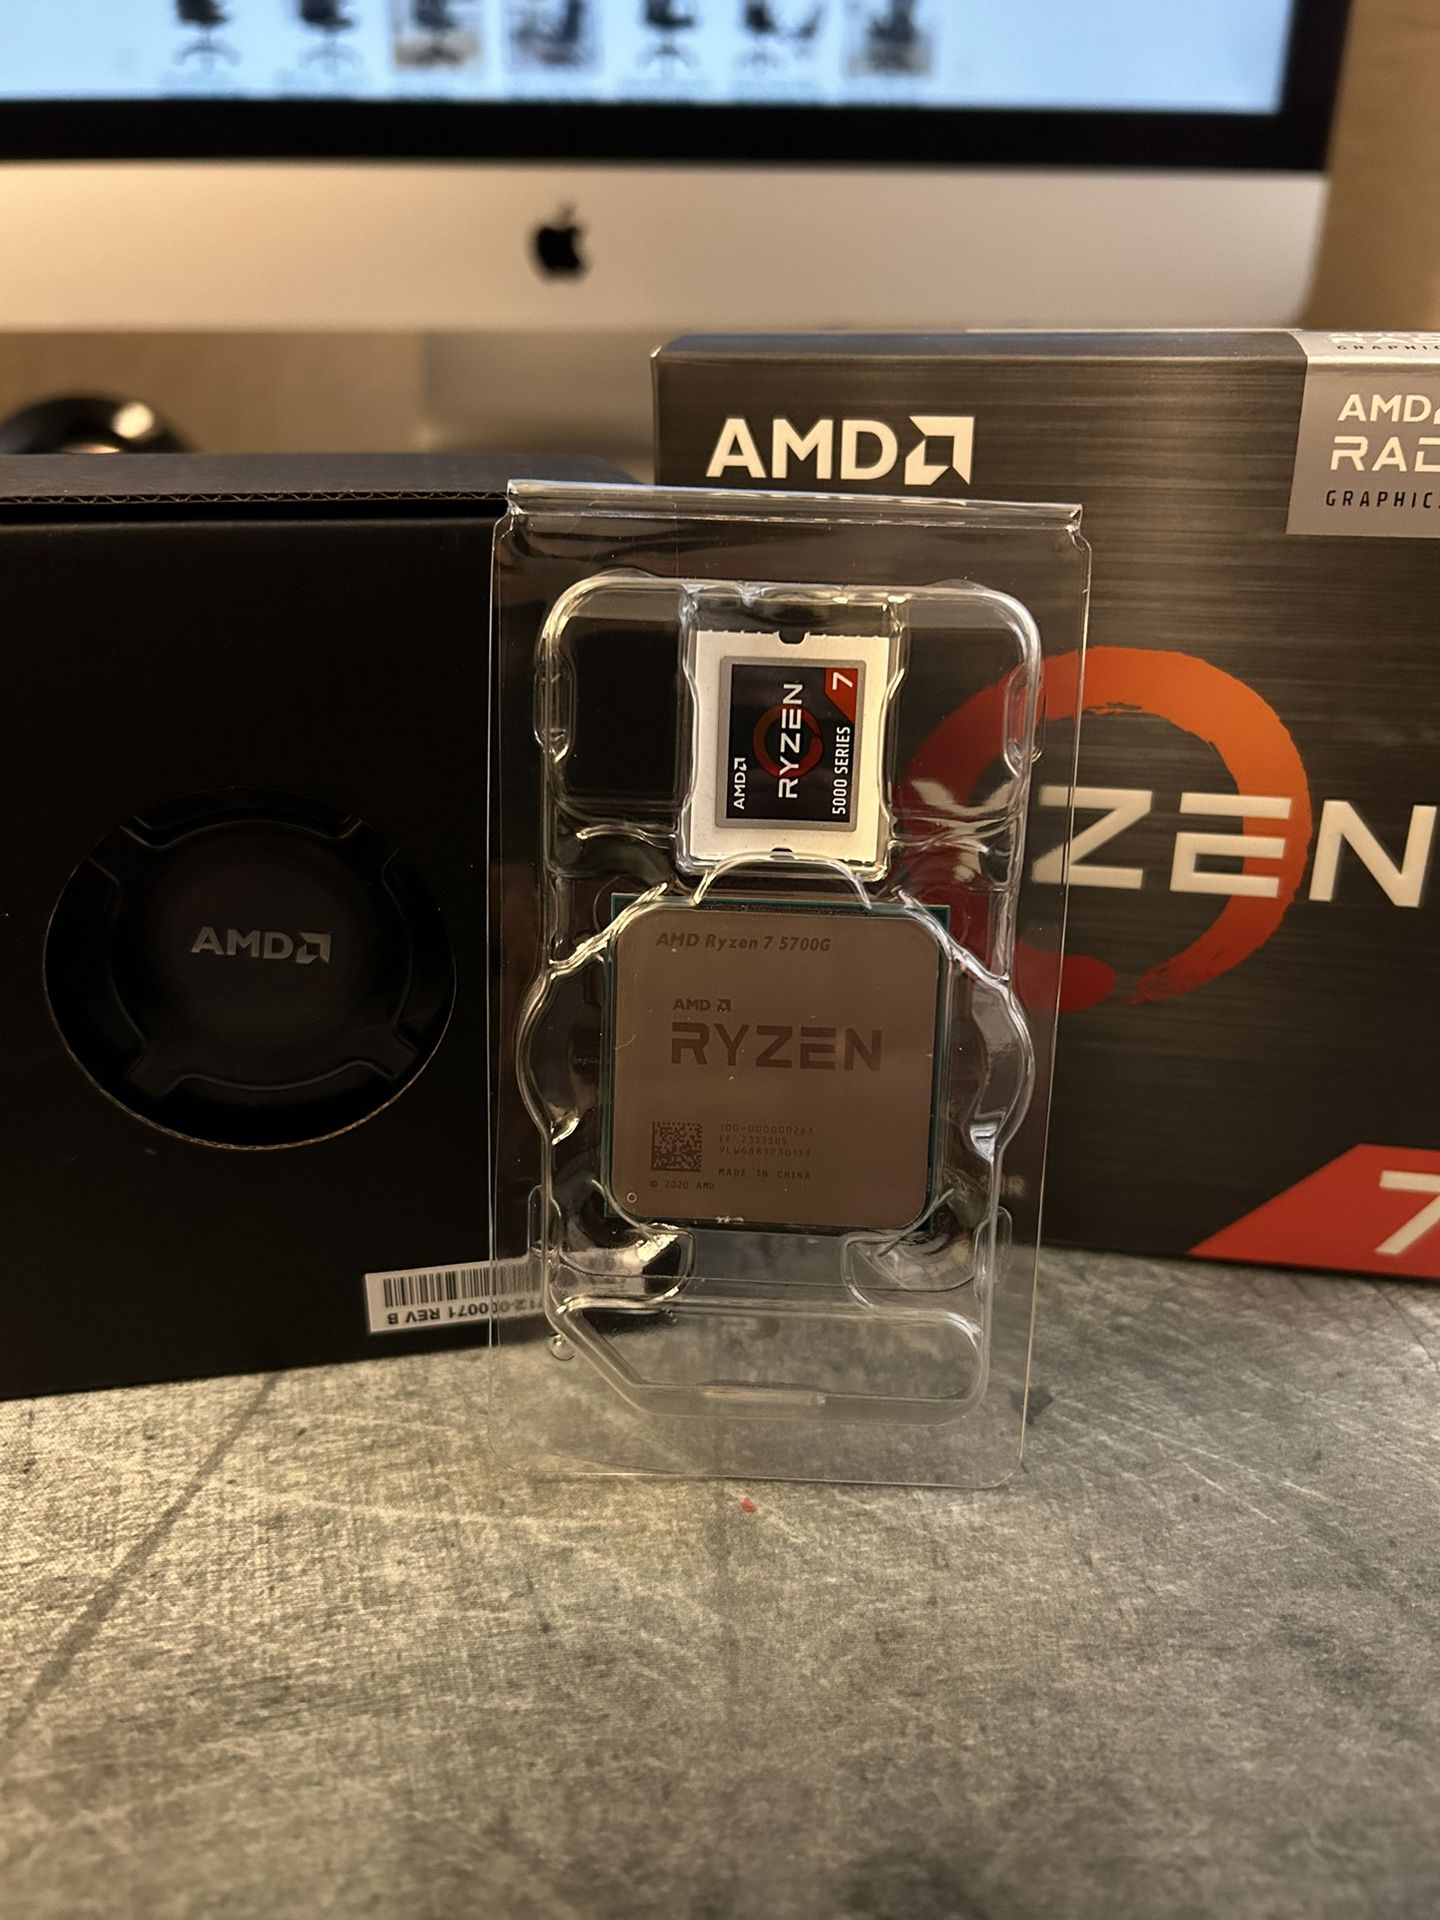 AMD Ryzen 7 5700g CPU/APU